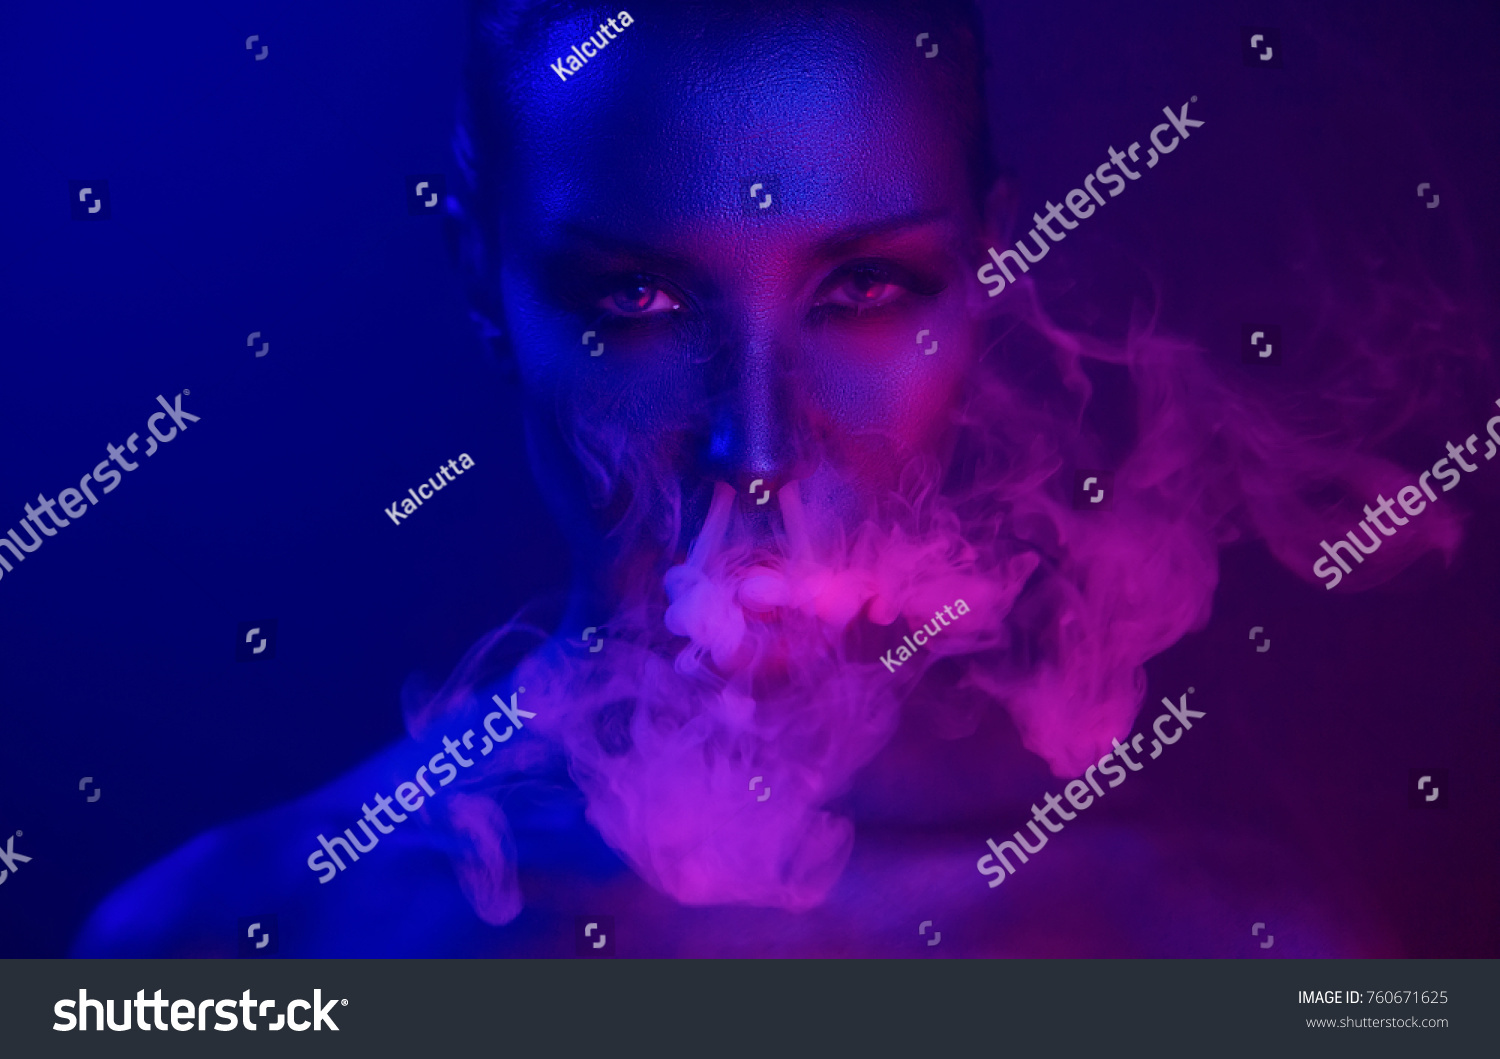 15 934 Imágenes De Sexy Girl Smoking Cigarette Imágenes Fotos Y Vectores De Stock Shutterstock